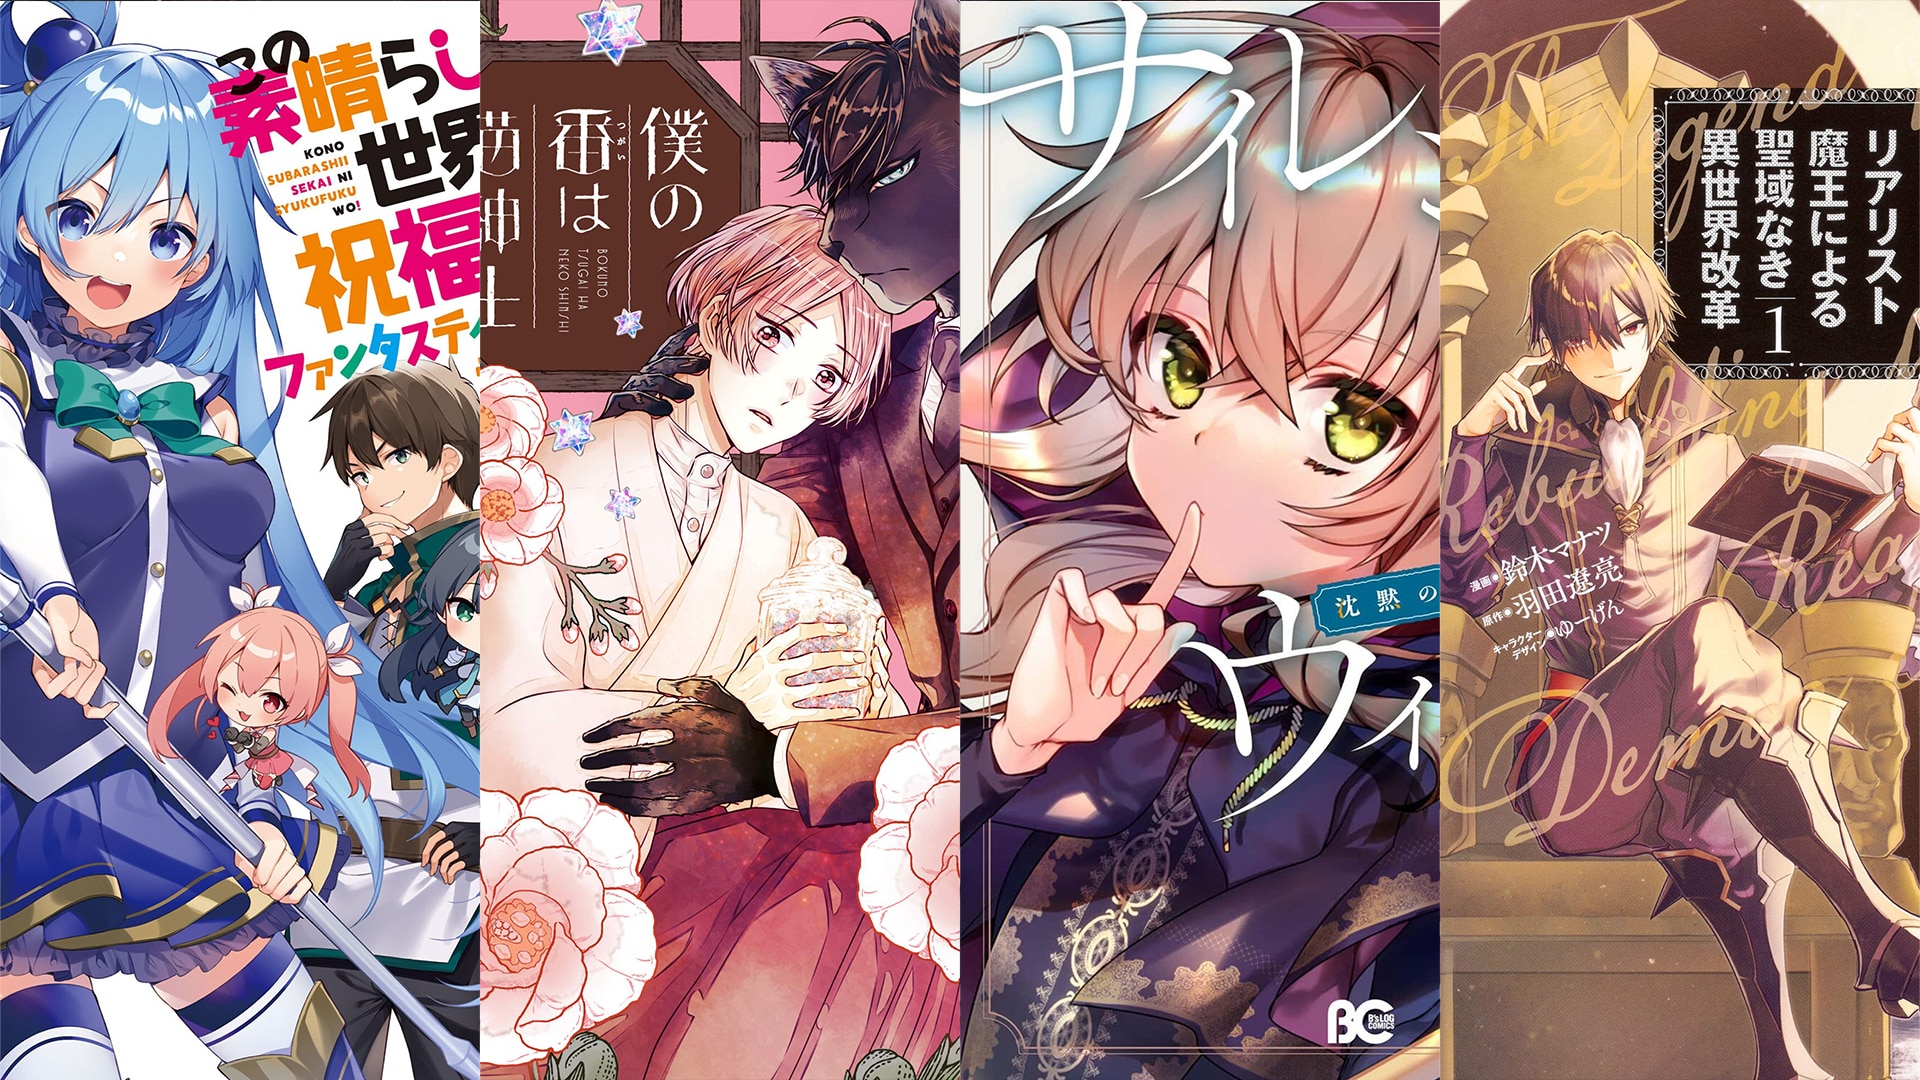 December 2023 Manga / Light Novel / Book Releases